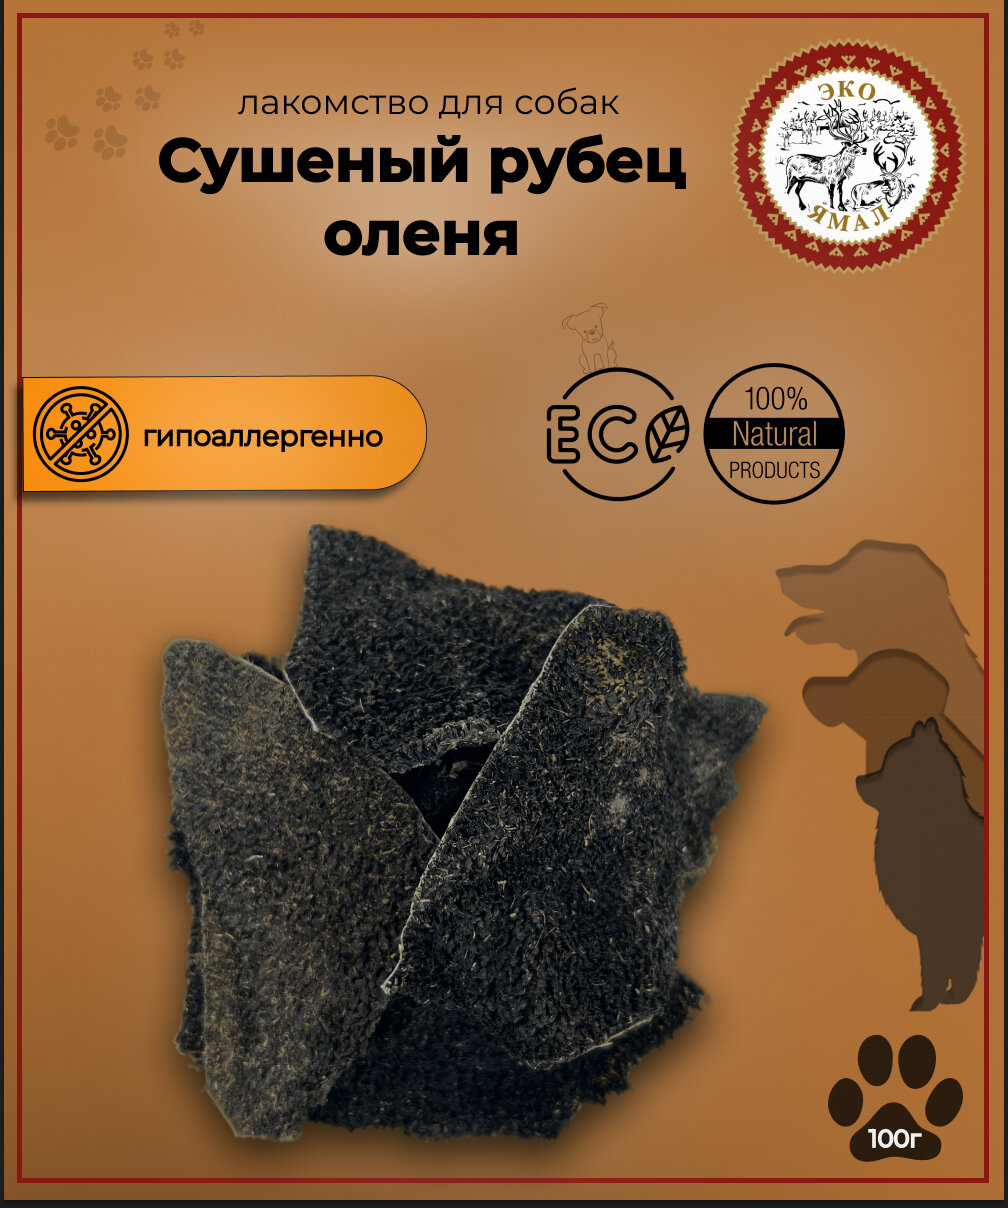 Лакомство для собак "Сушеный рубец (желудок) северного оленя", 100 гр.